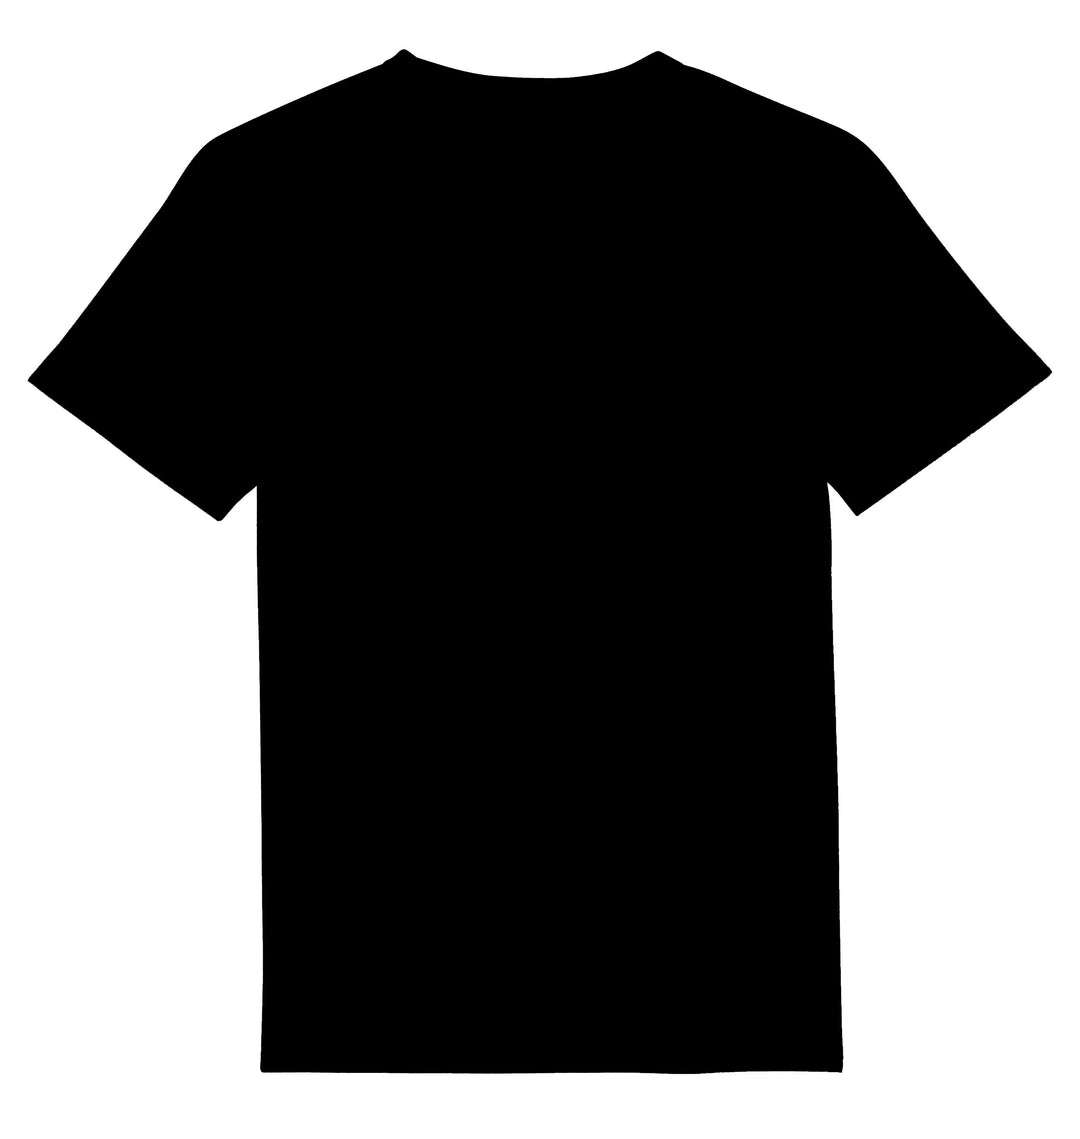 Massgeschneidertes T-Shirt UNISEX Rundhals